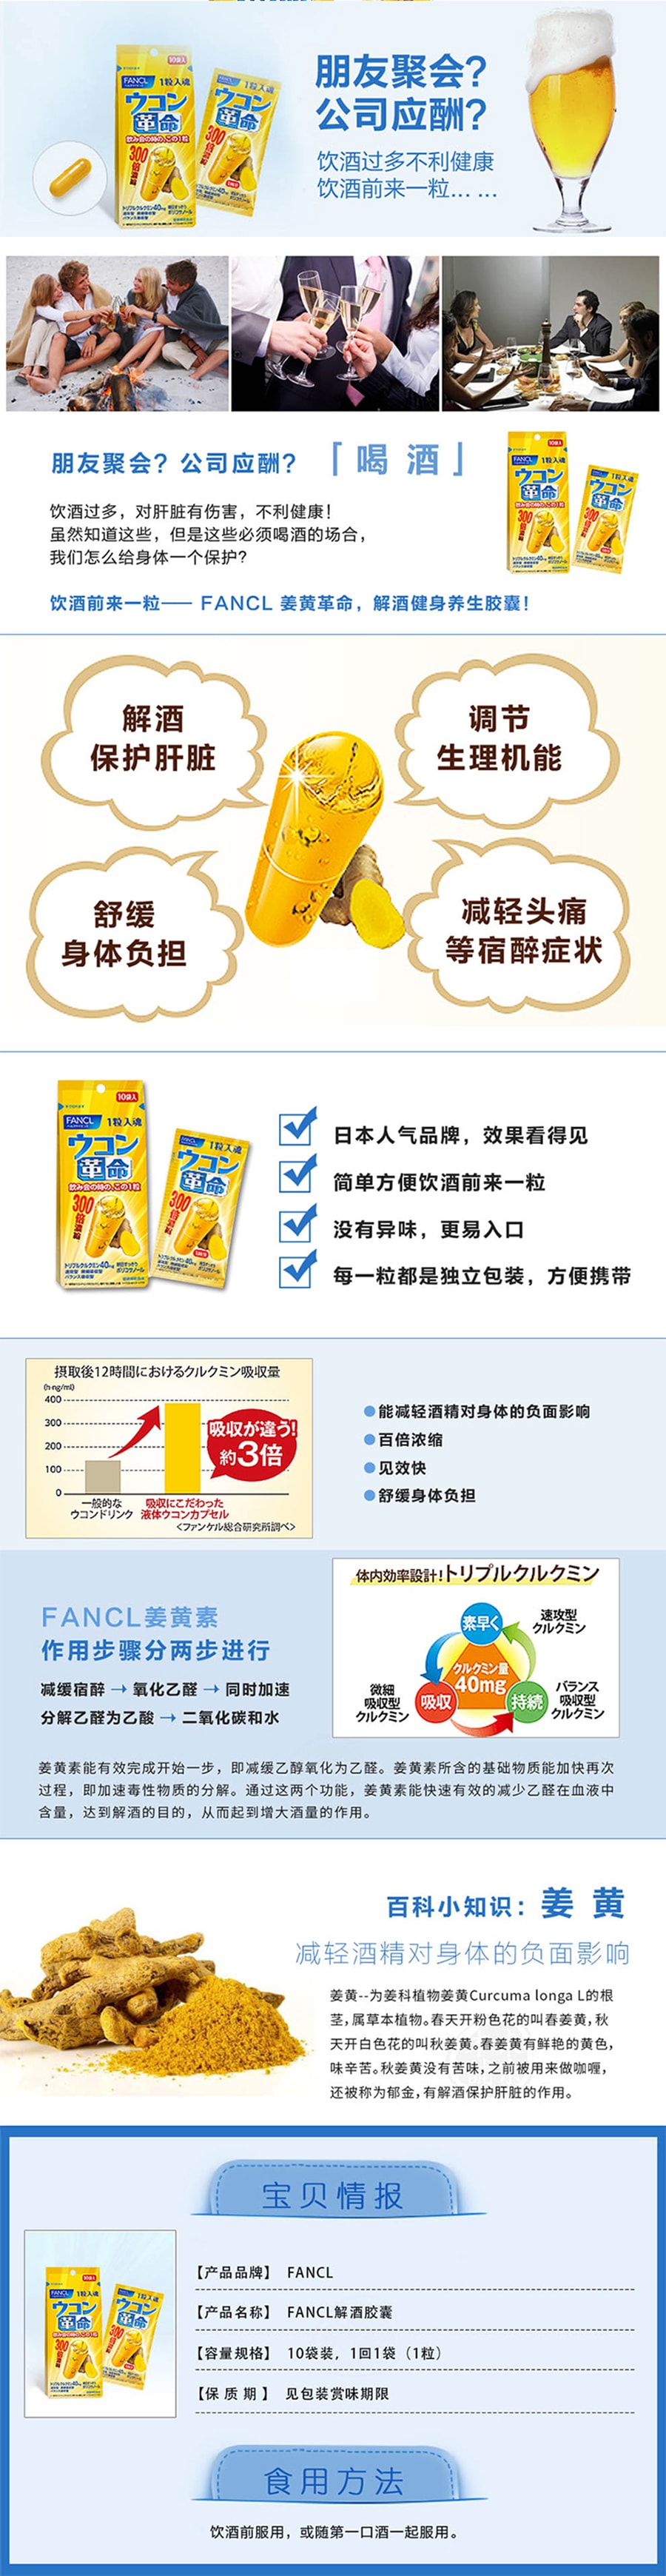 【日本直效郵件 】FANCL無添加芳珂 大豆異黃酮錠 30粒 30日